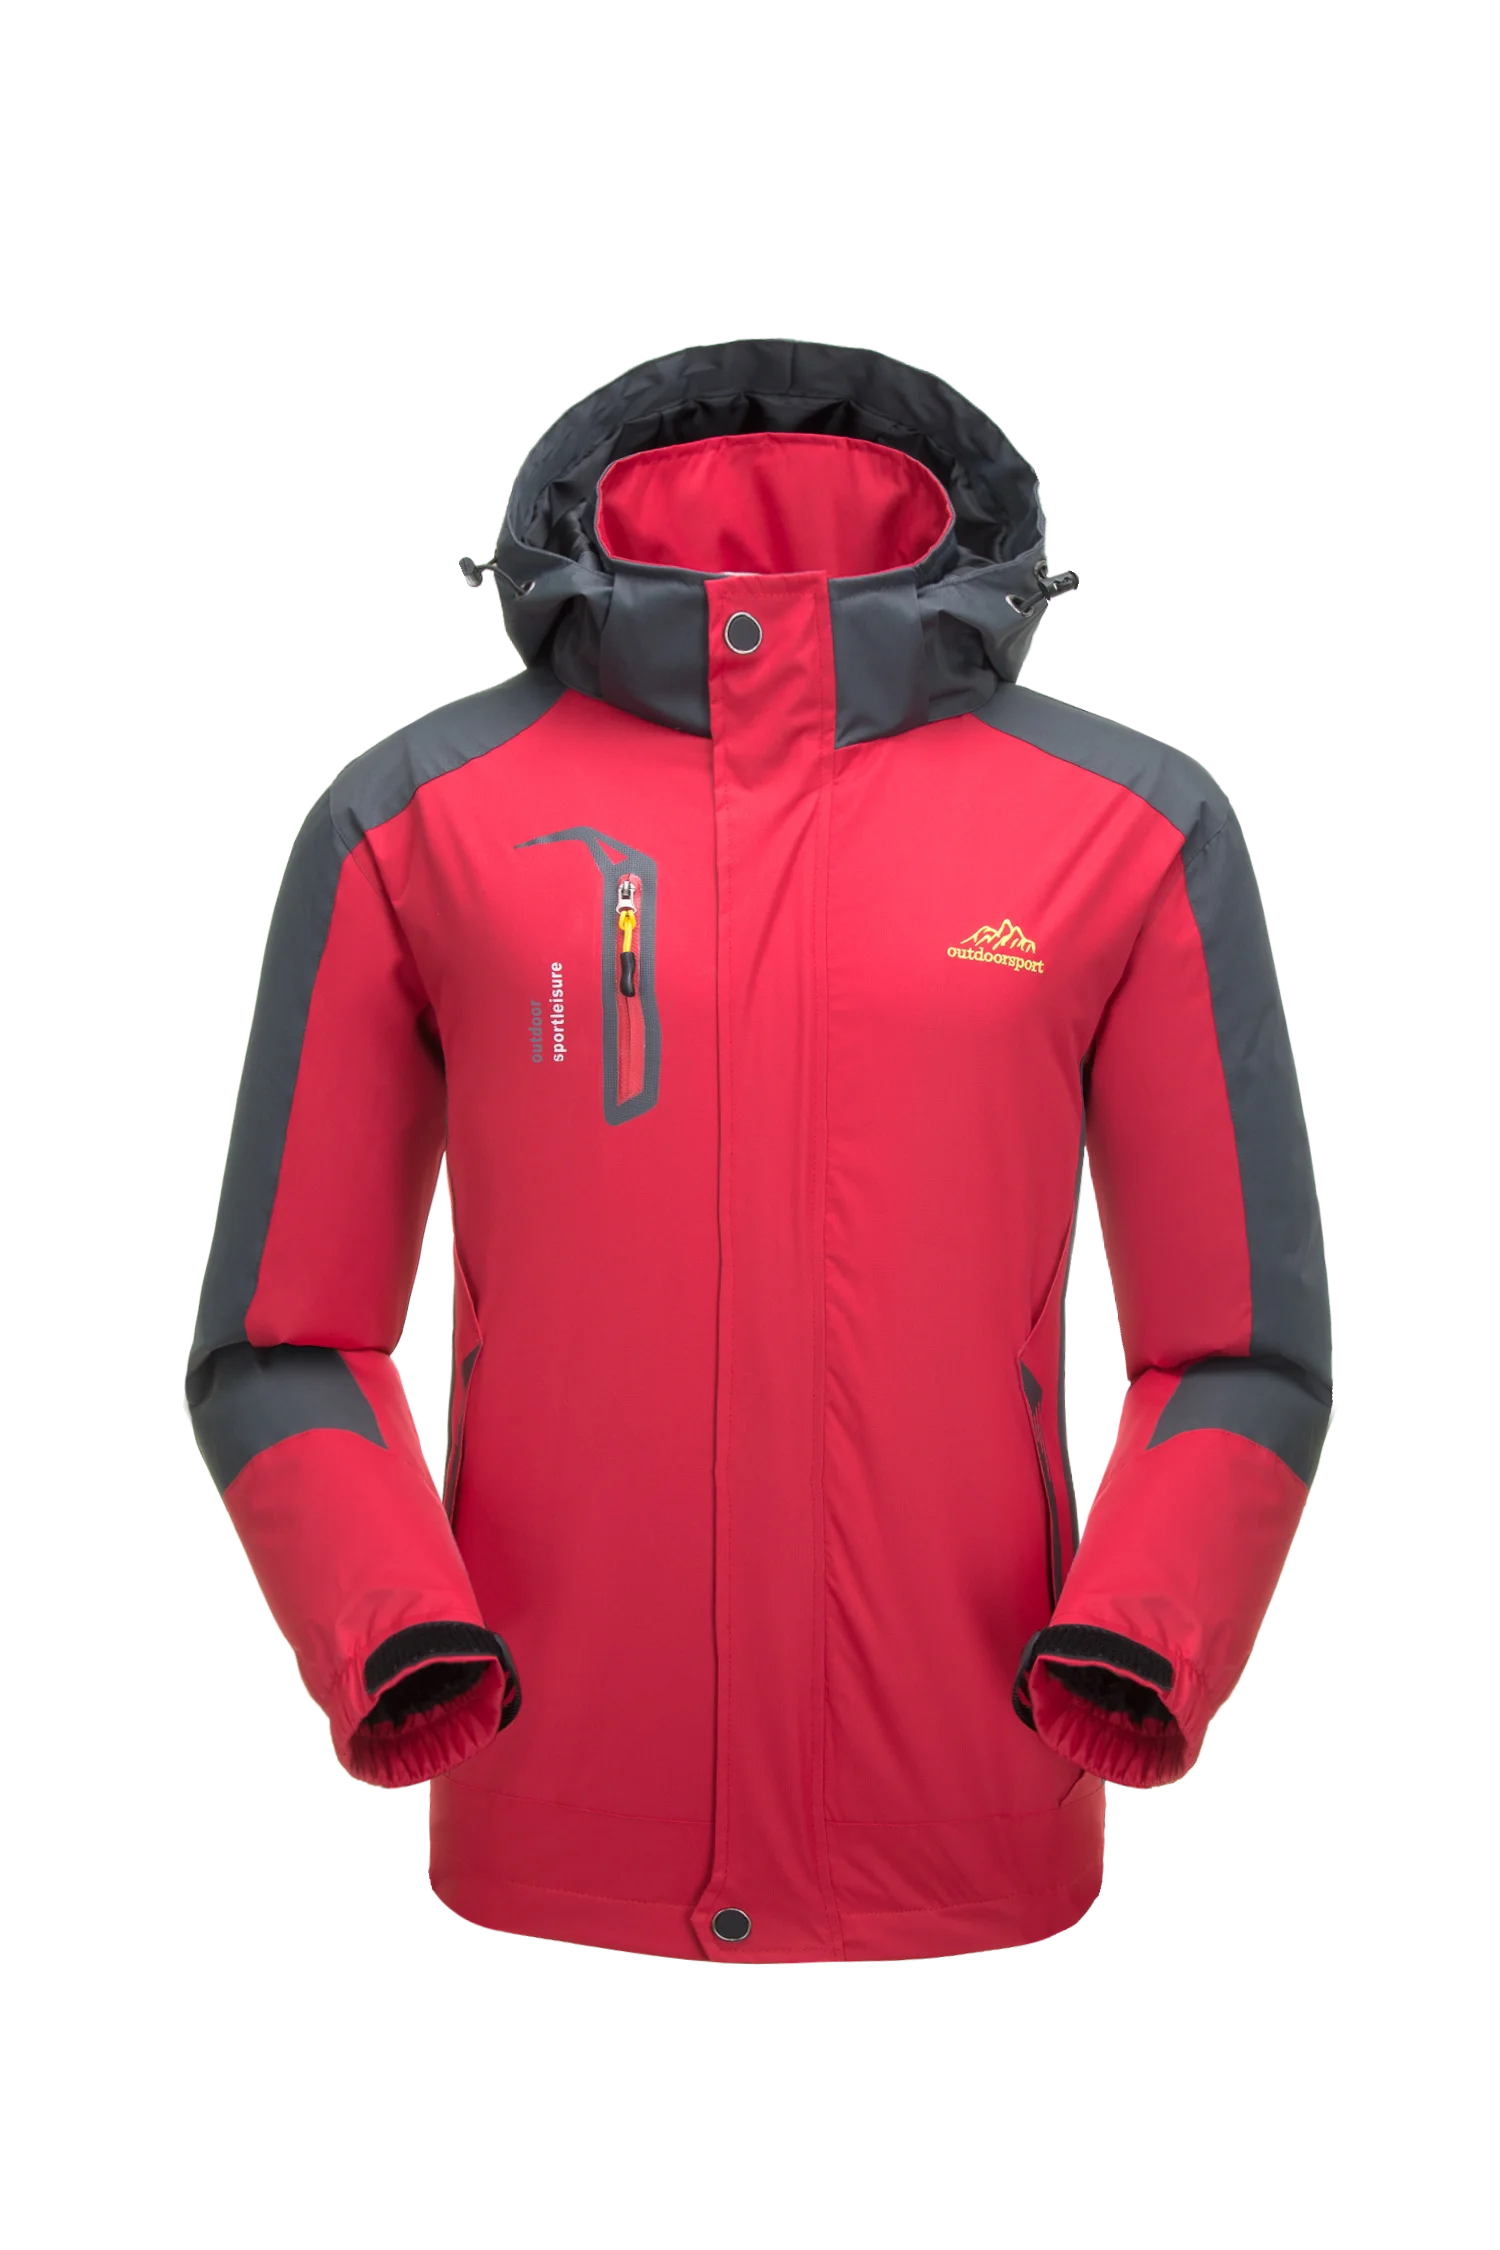 Мужская Уличная походная горная куртка, пальто, верхняя одежда, ветровка, спортивная одежда, спортивный костюм, свитер, спортивные блейзеры 12320 - Цвет: Красный